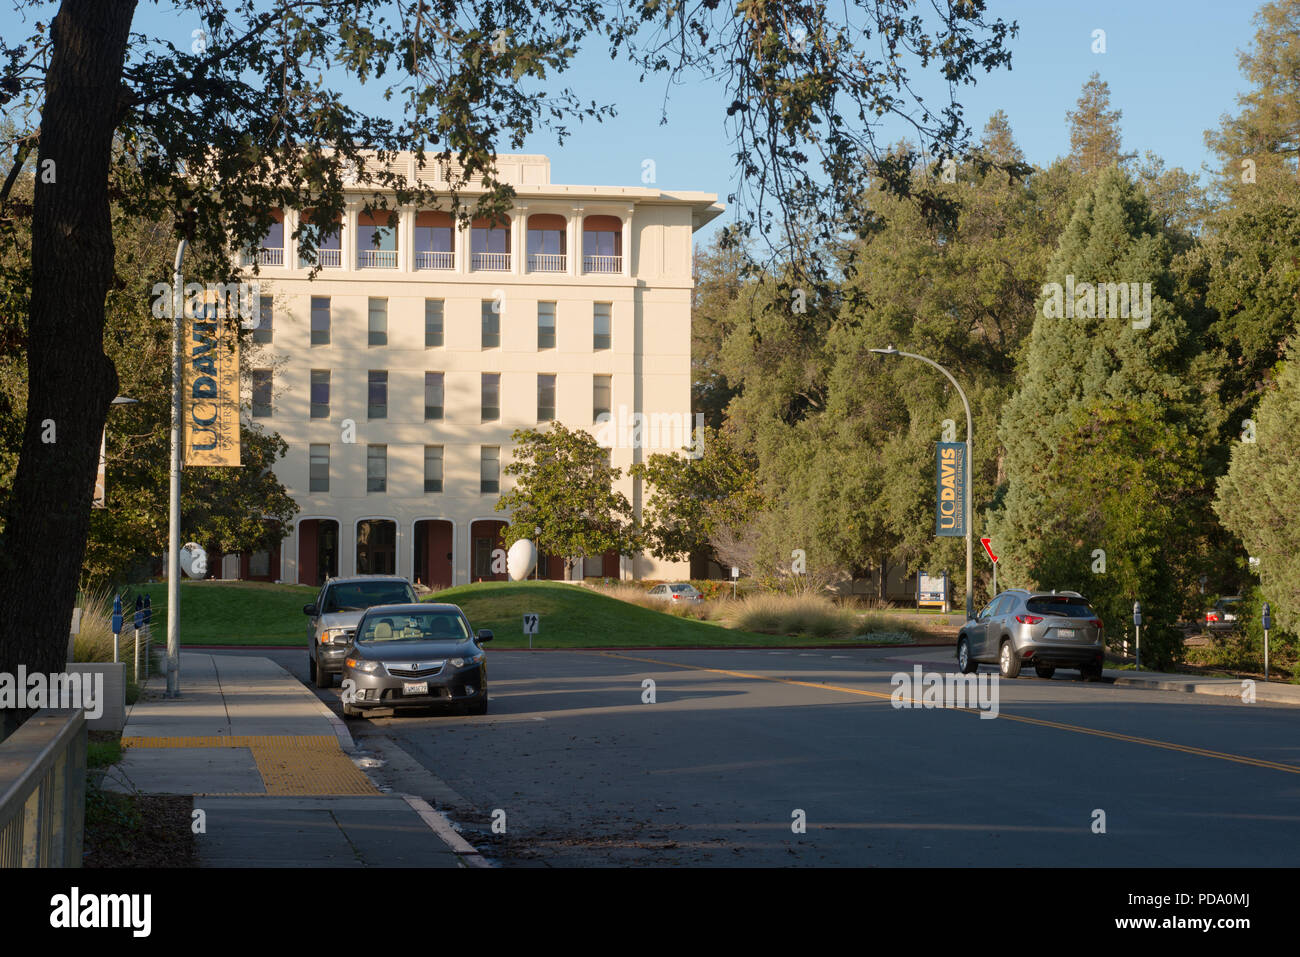 DAVIS EN CALIFORNIE, le 23 novembre 2016, à la recherche en bas de la rue à l'égard Mrak Hall, entourée d'arbres, à l'Université de Californie, Davis Campus Banque D'Images